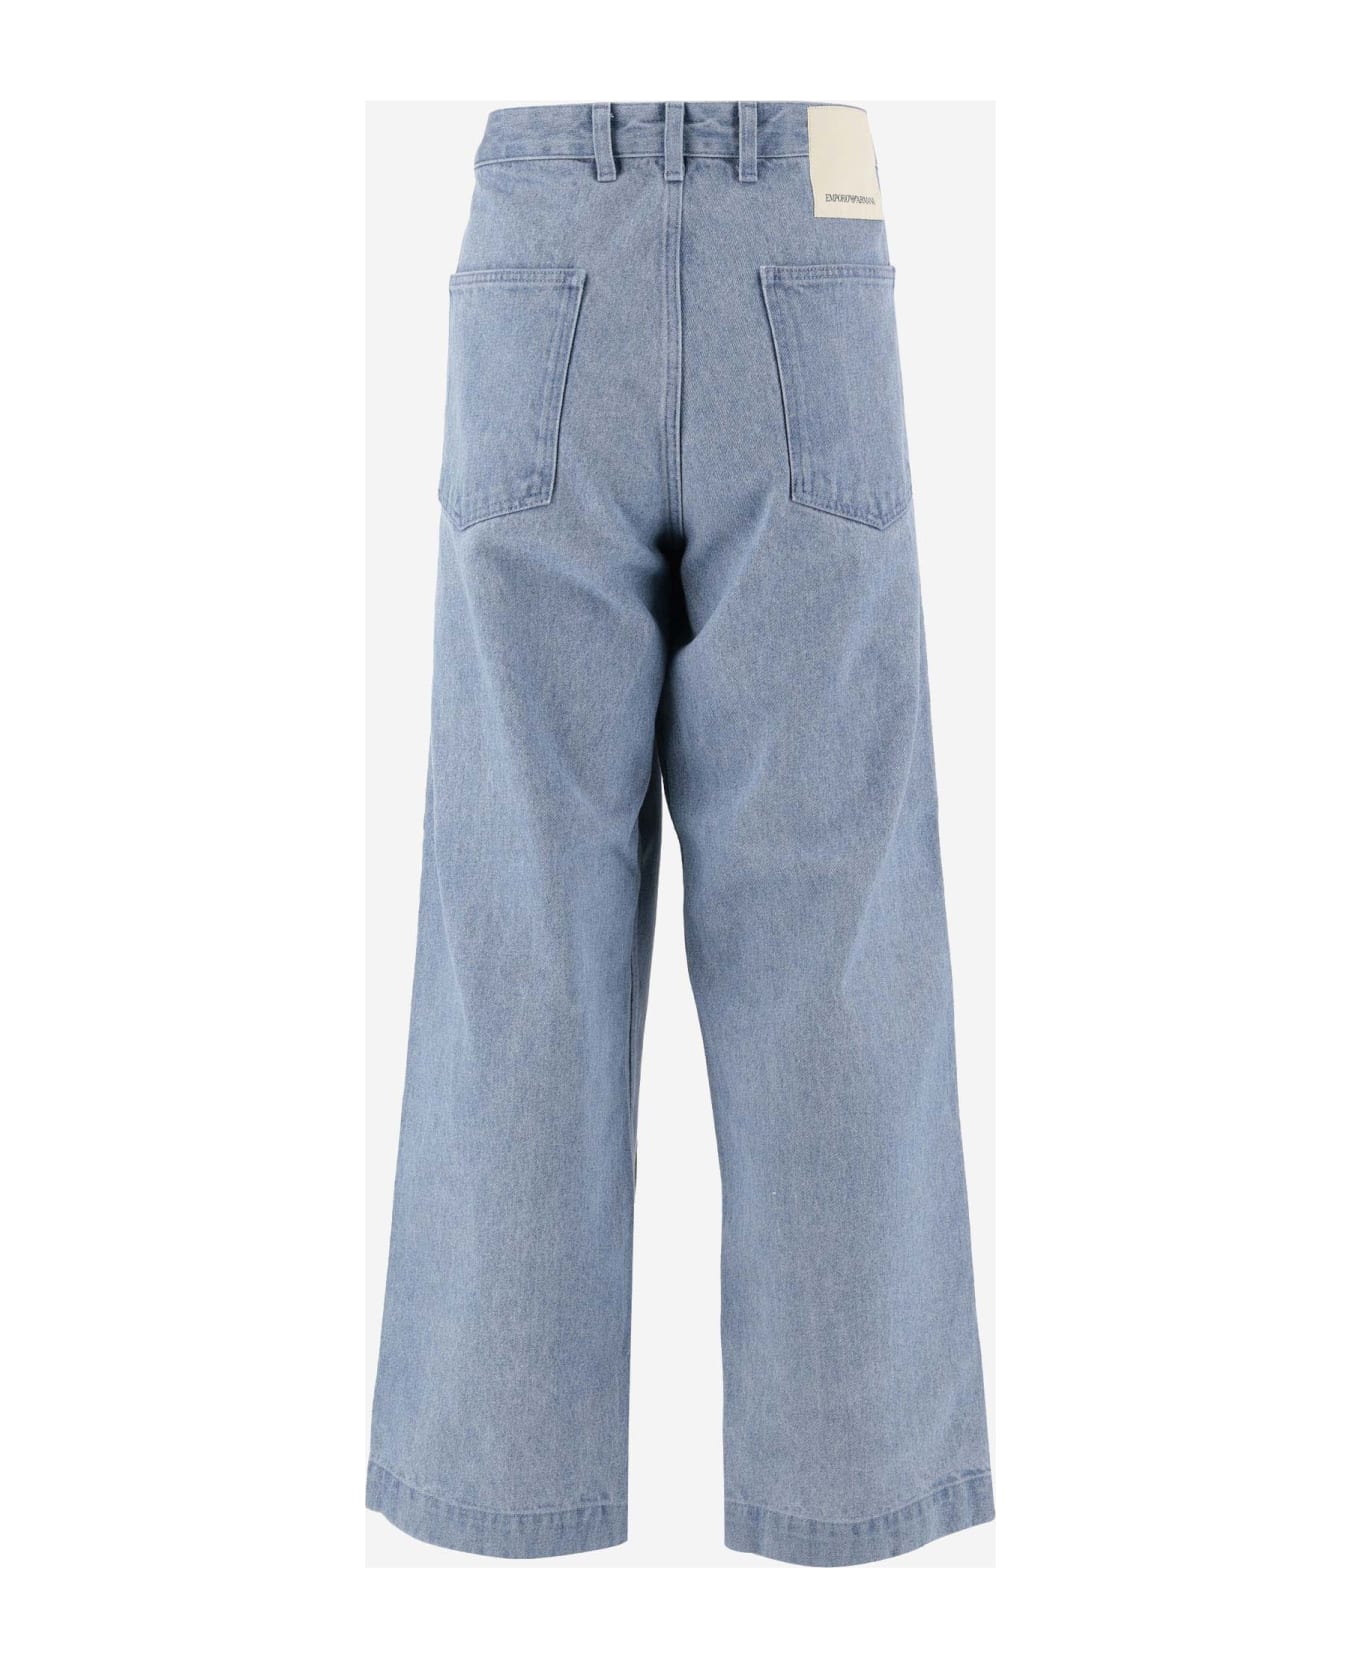 Emporio Armani Cotton Denim Jeans - Denim デニム